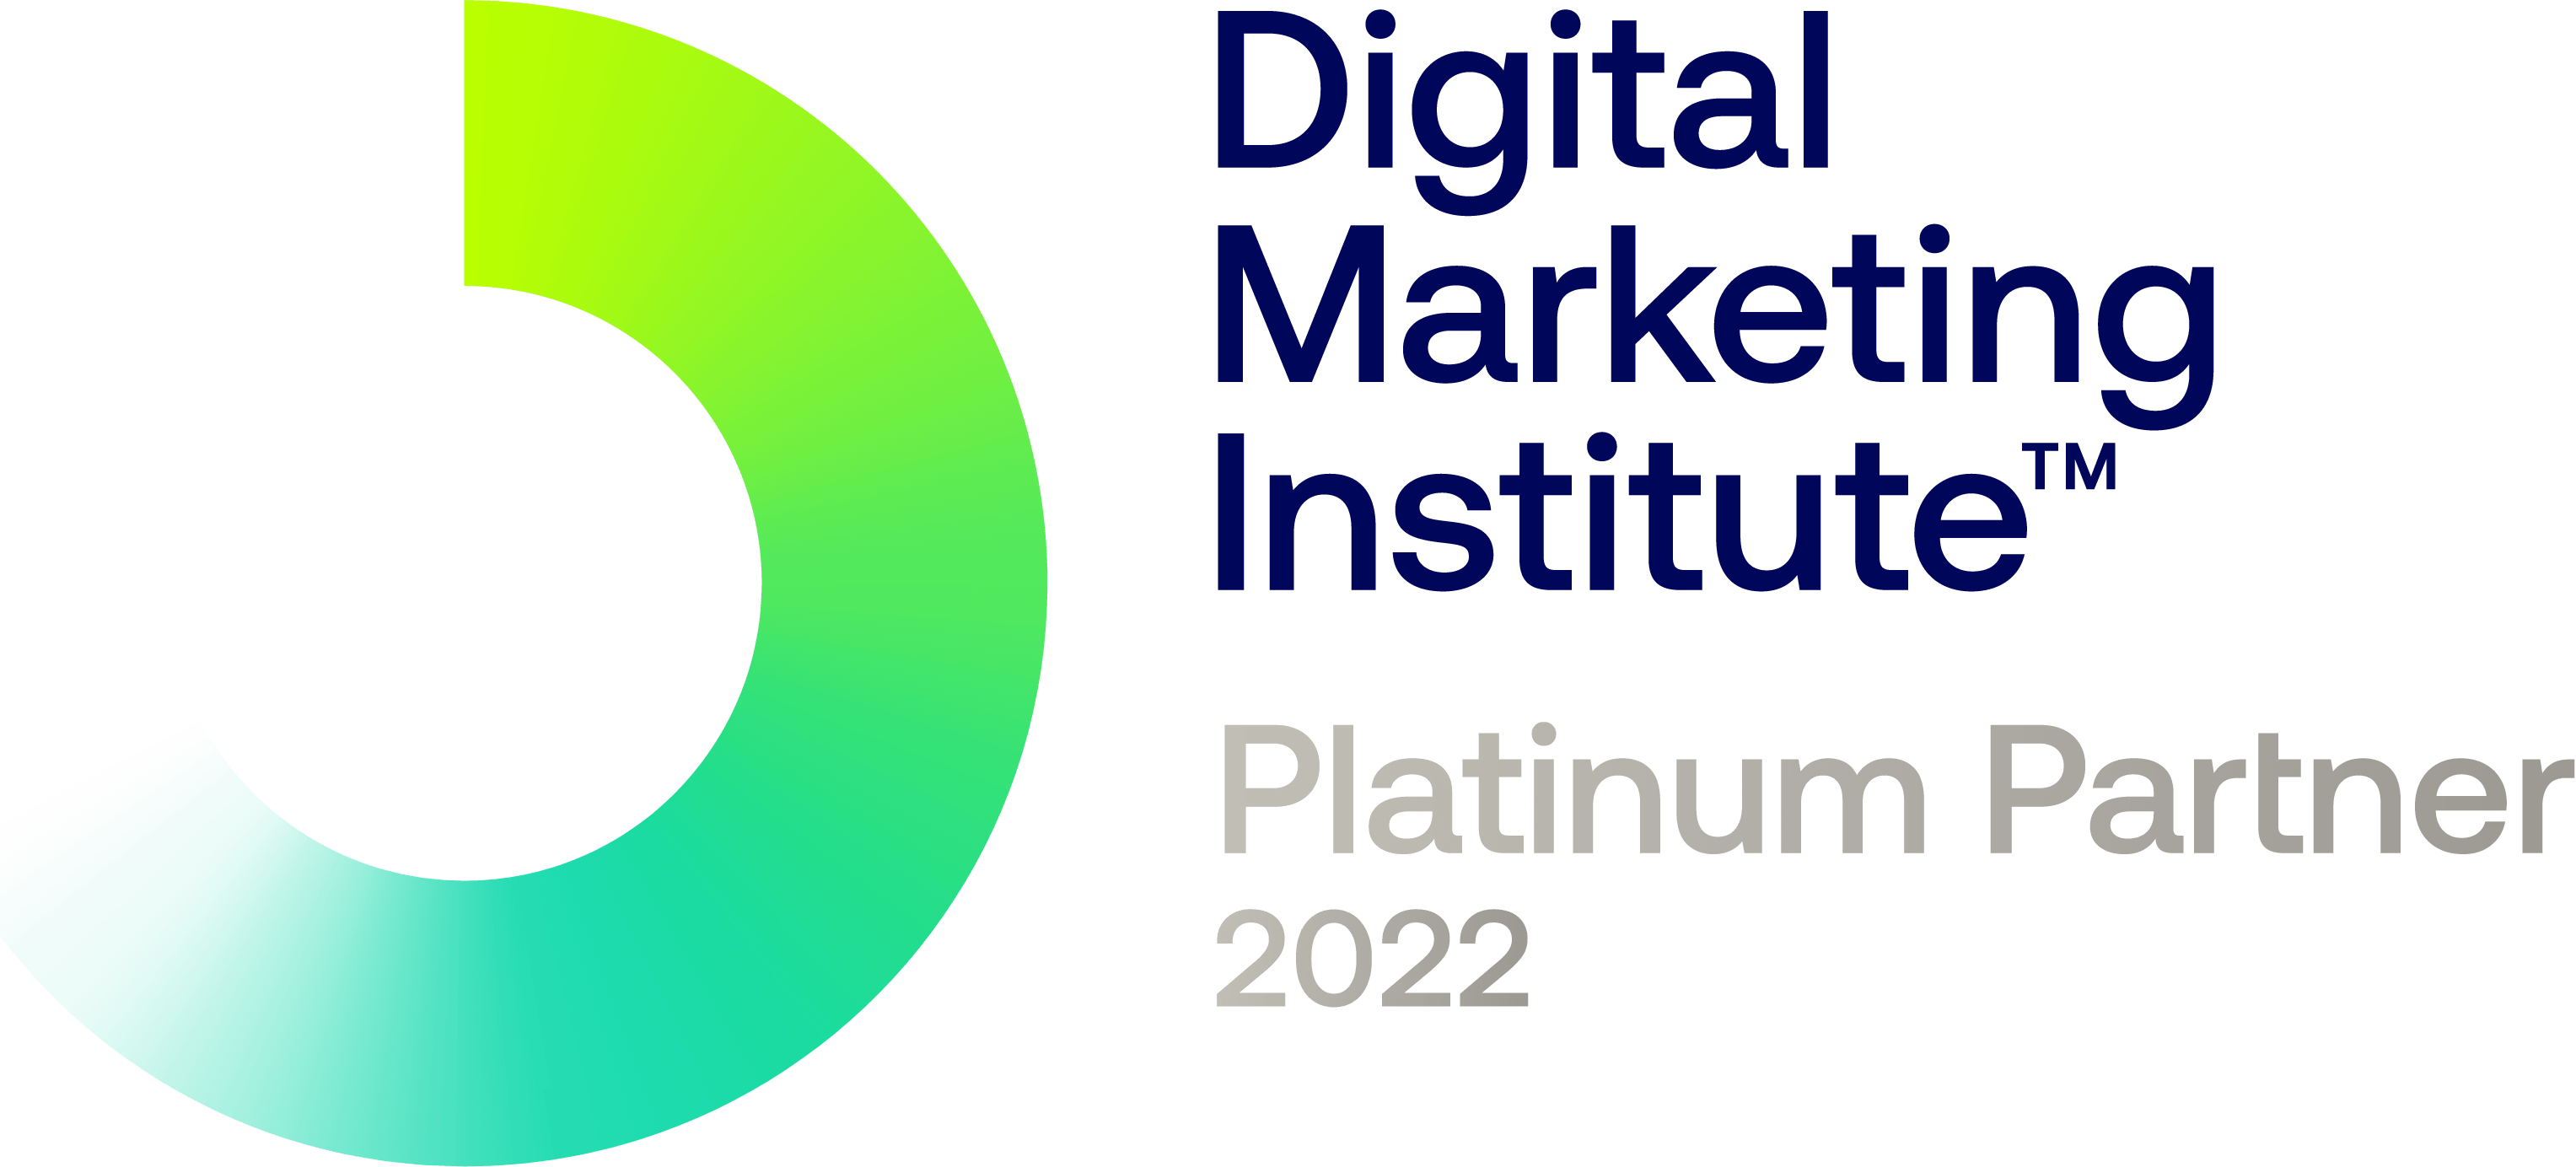 Cenit College Platinum Partner with Digital Marketing Institute